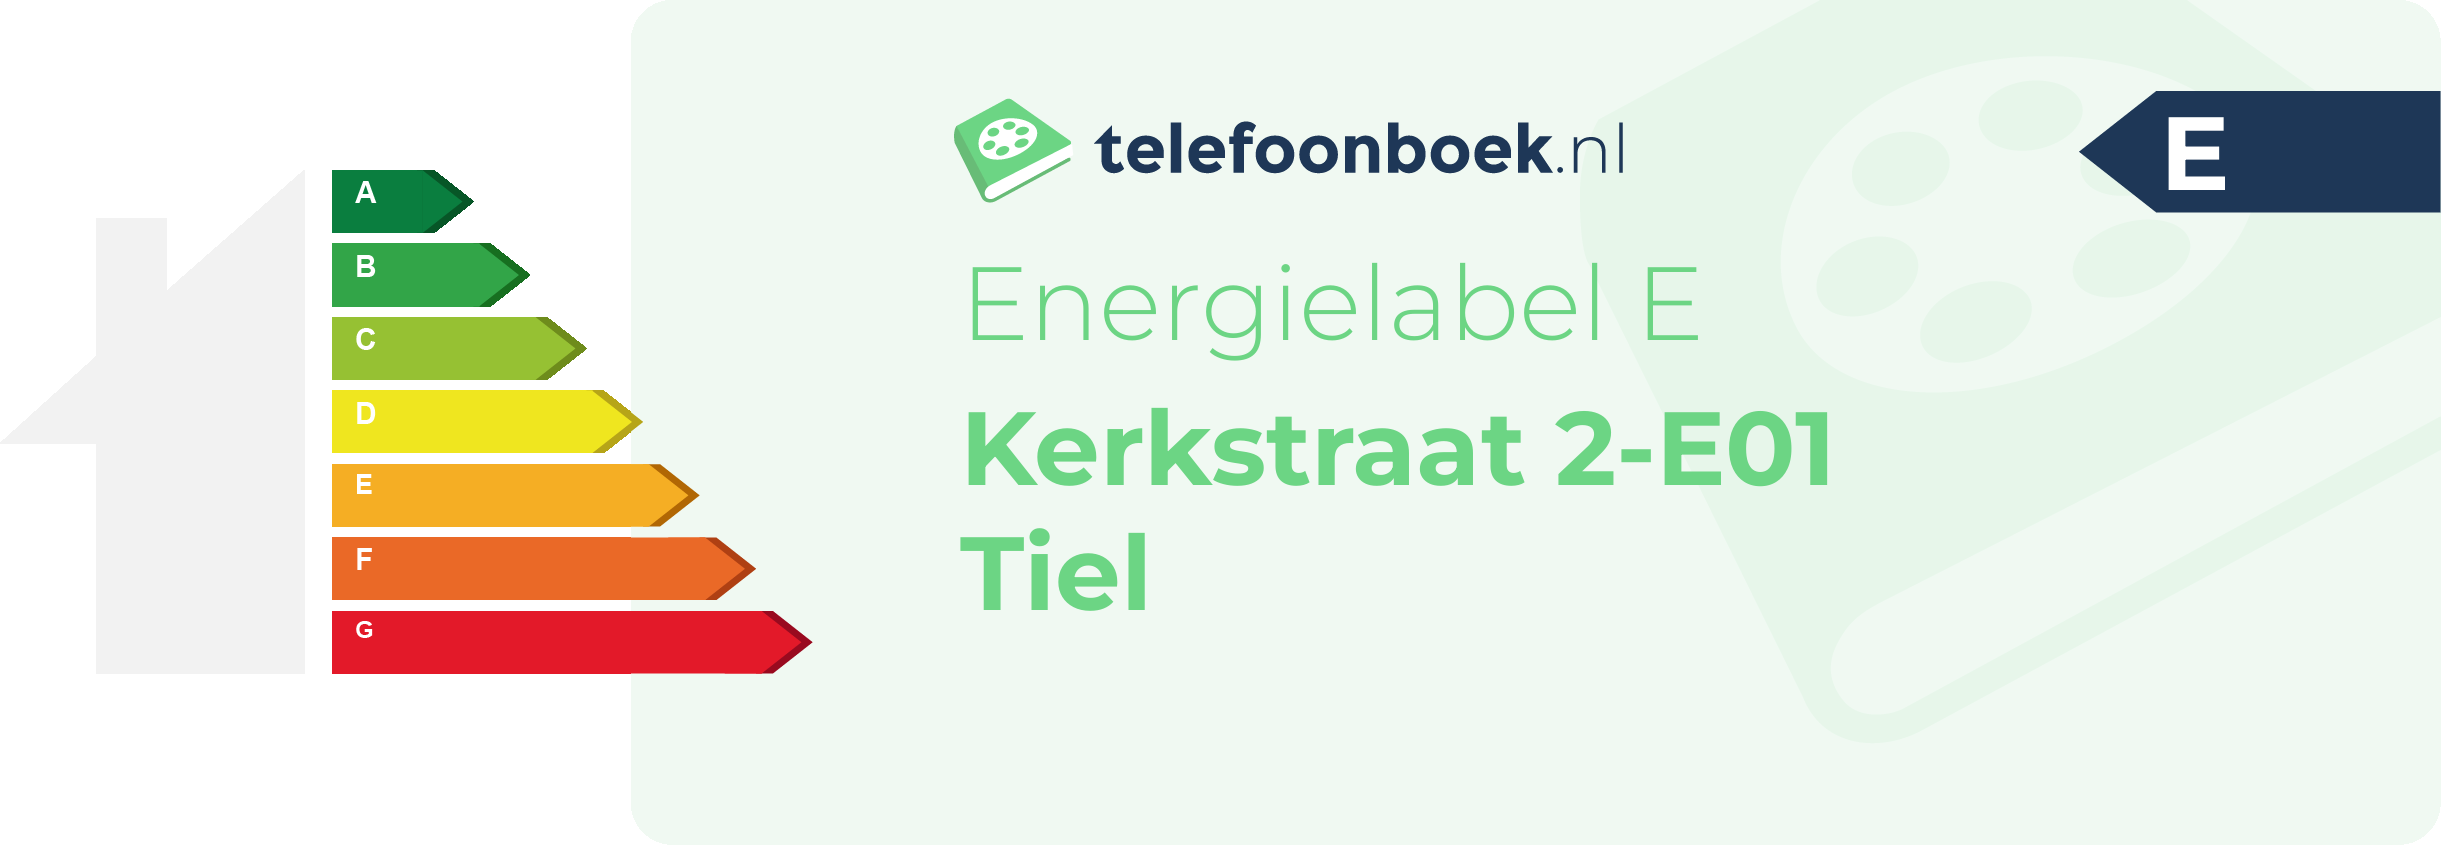 Energielabel Kerkstraat 2-E01 Tiel